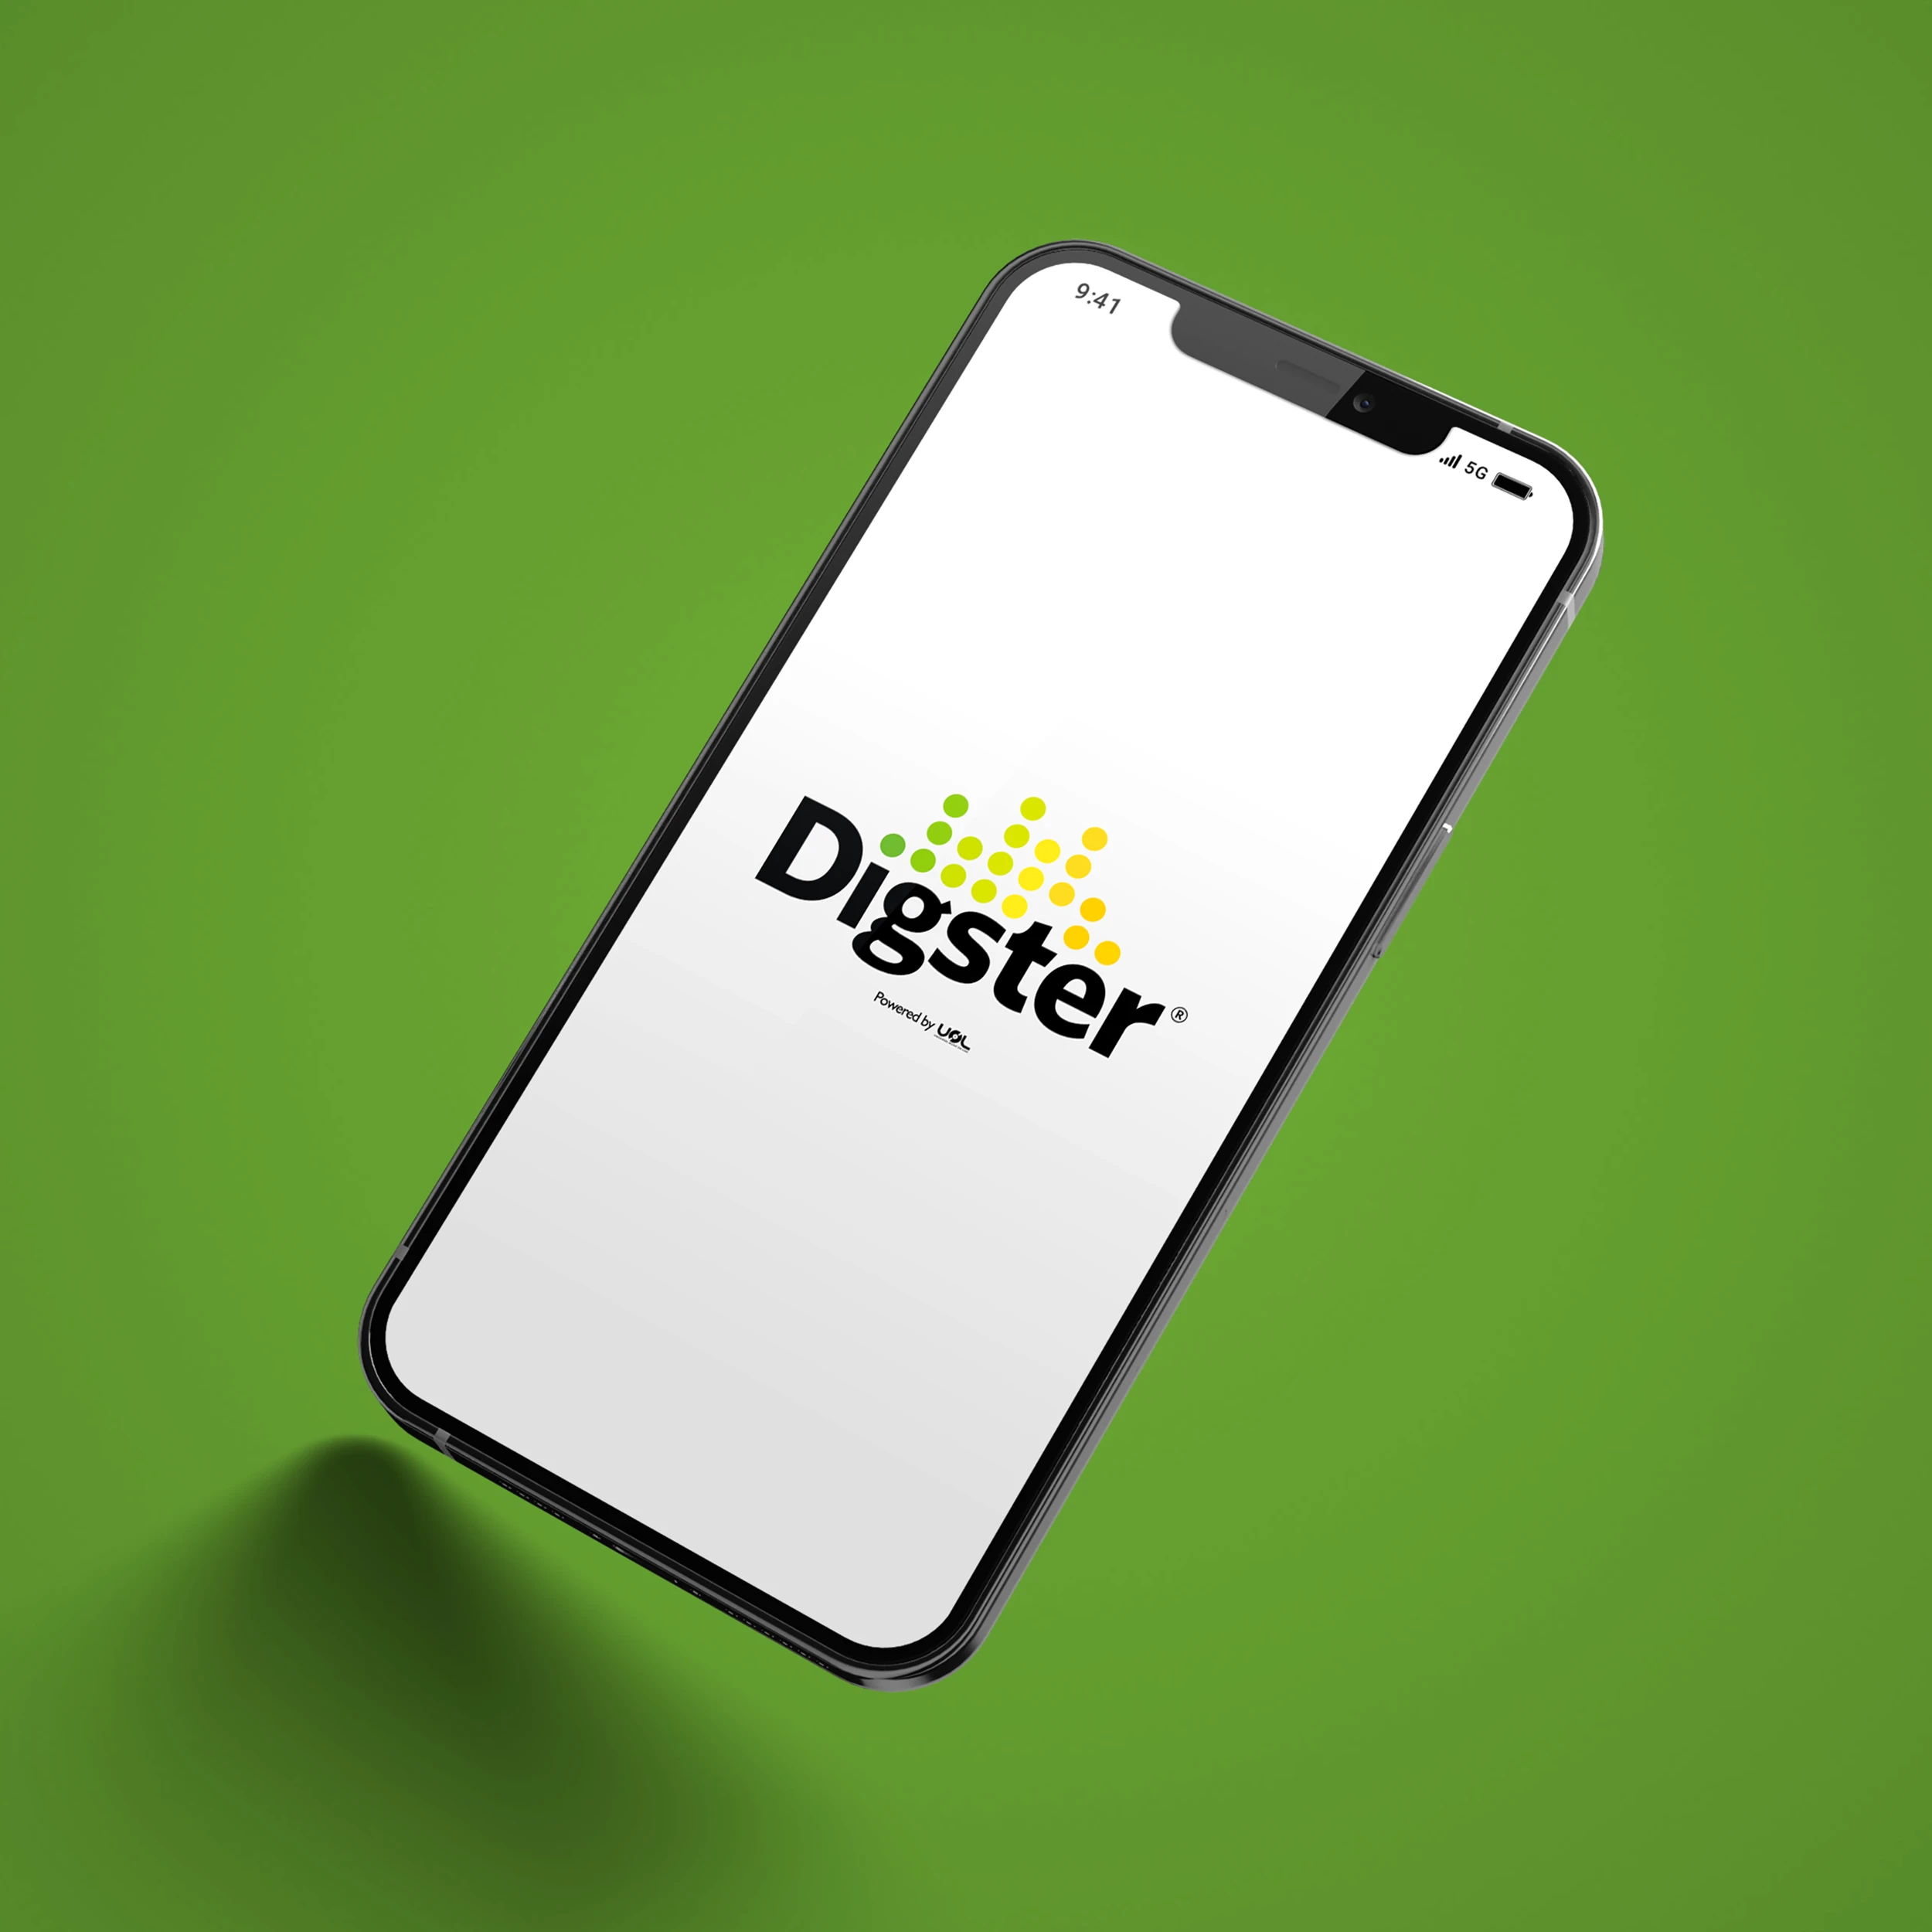 projet : Digster - App Afrique